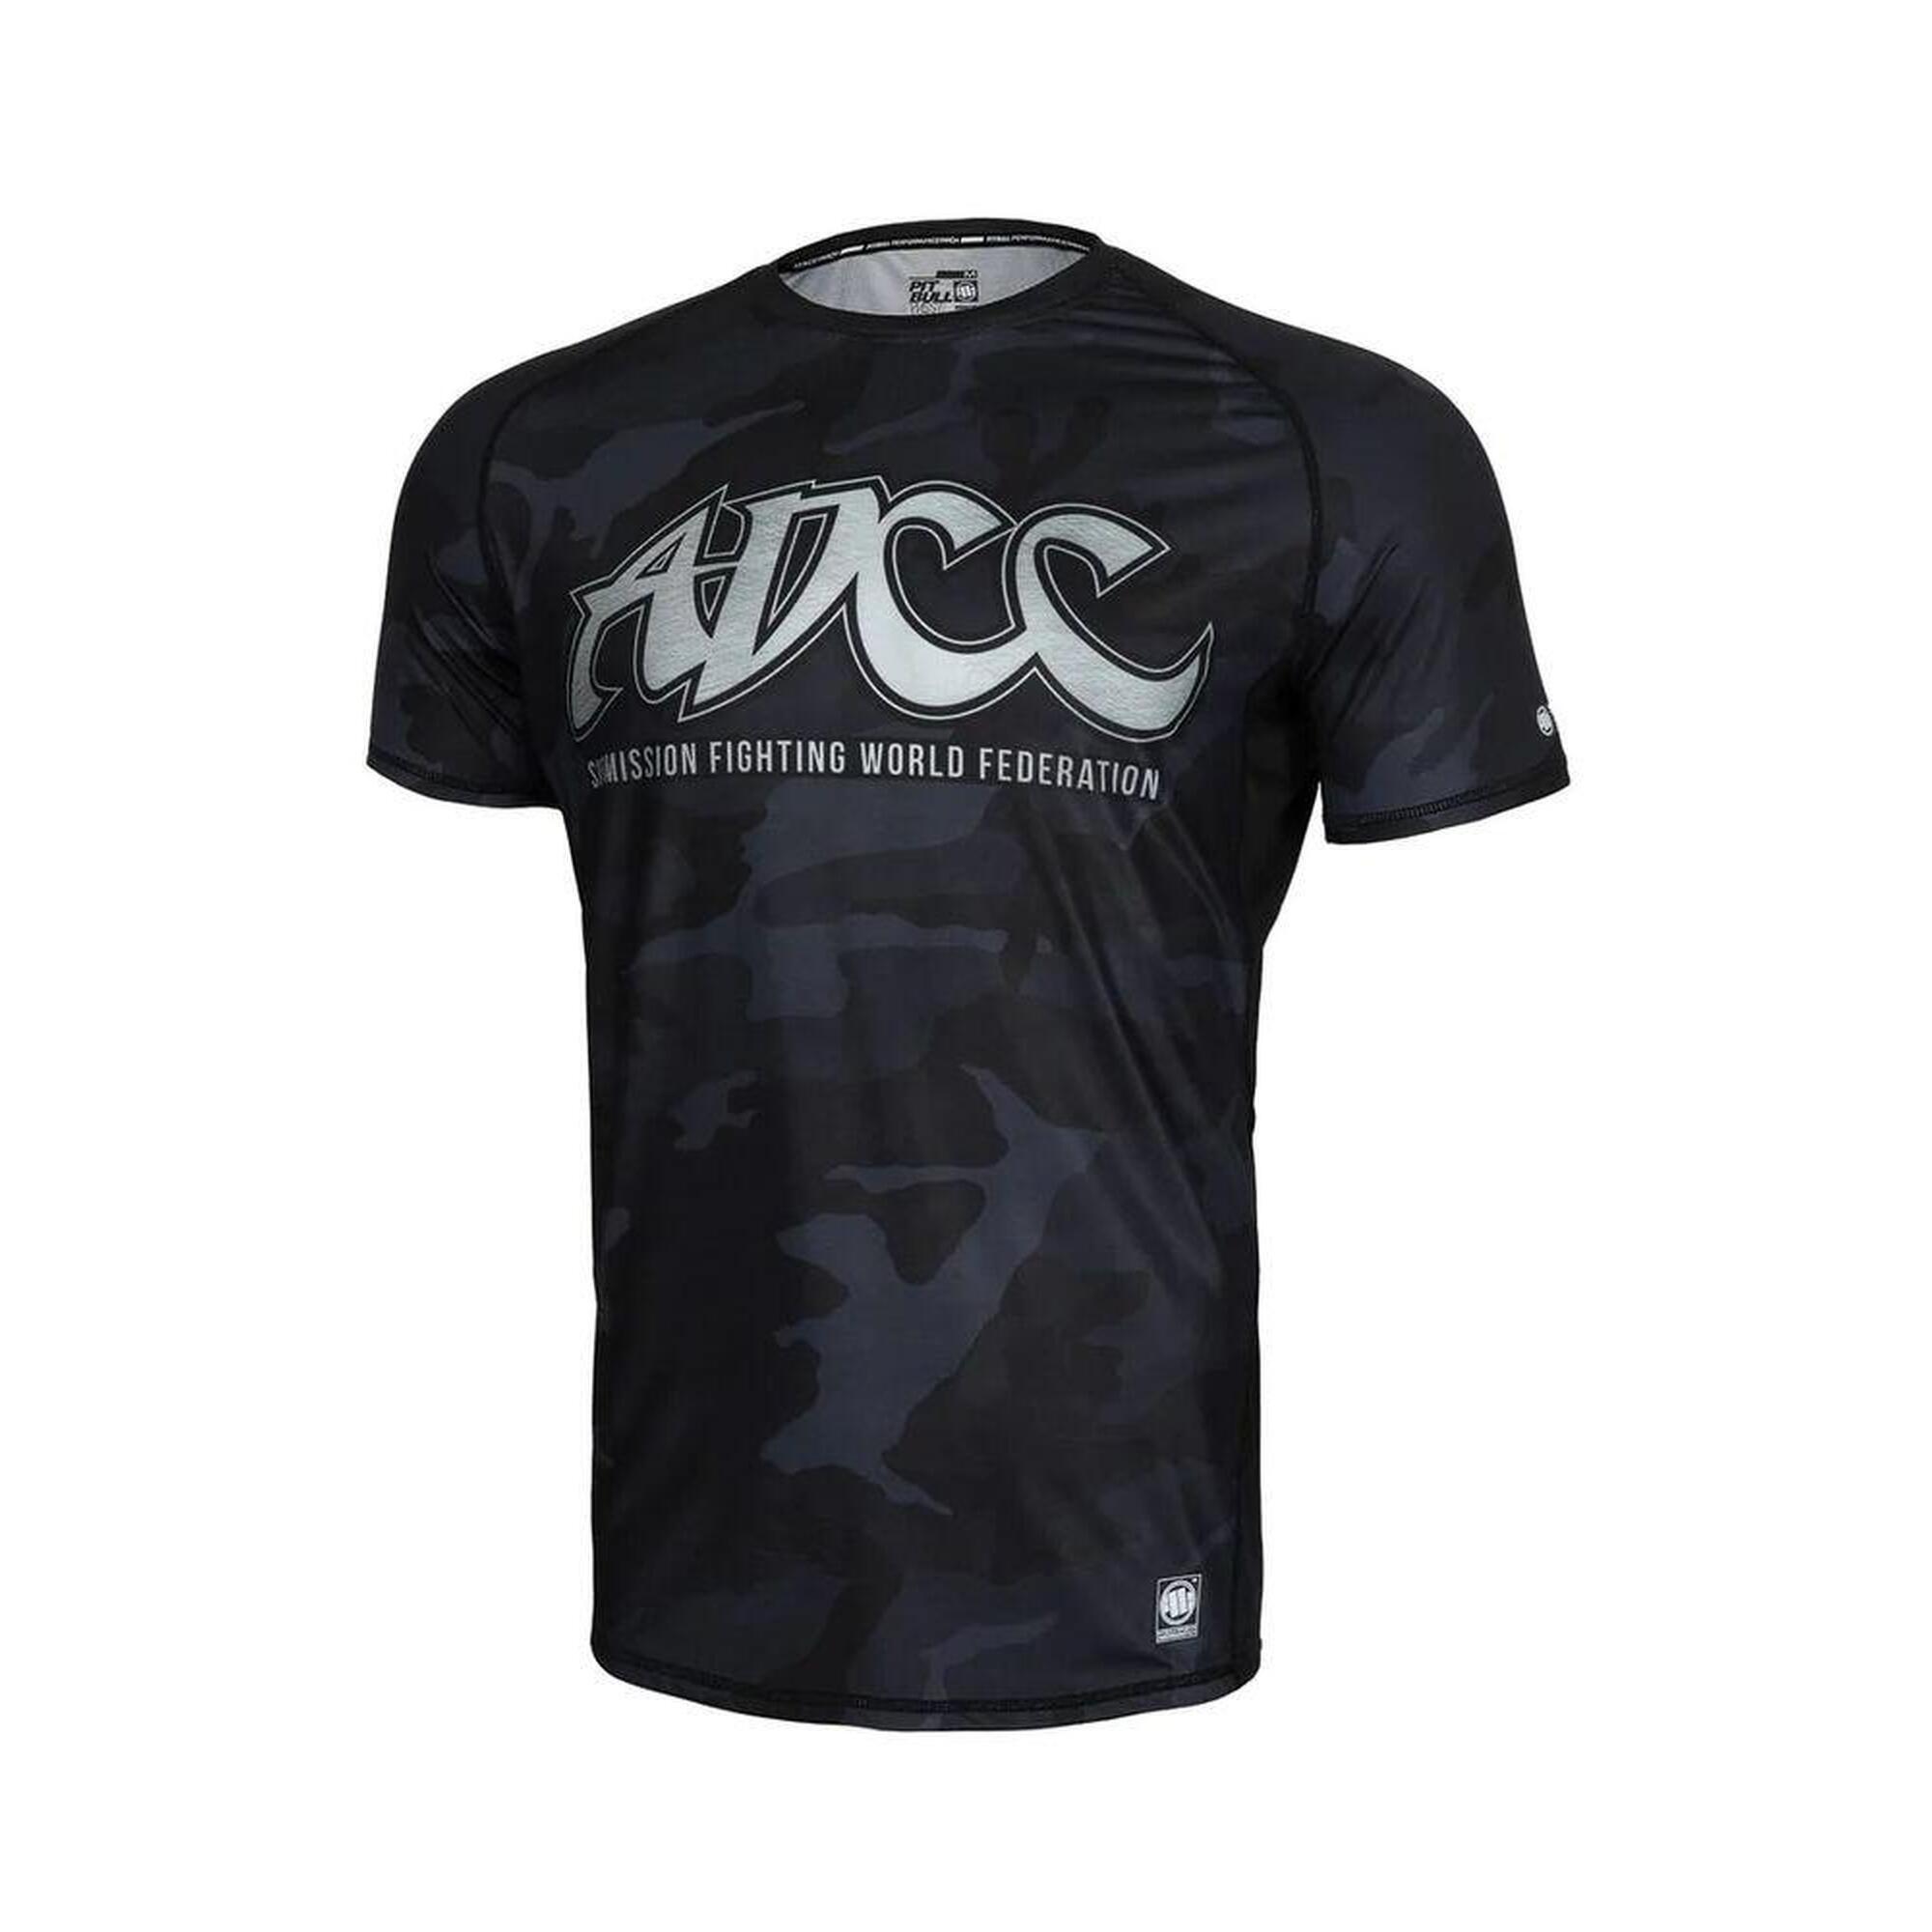 Rashguard dla dorosłych koszulka sportowa techniczna Performance Pro Plus ADCC